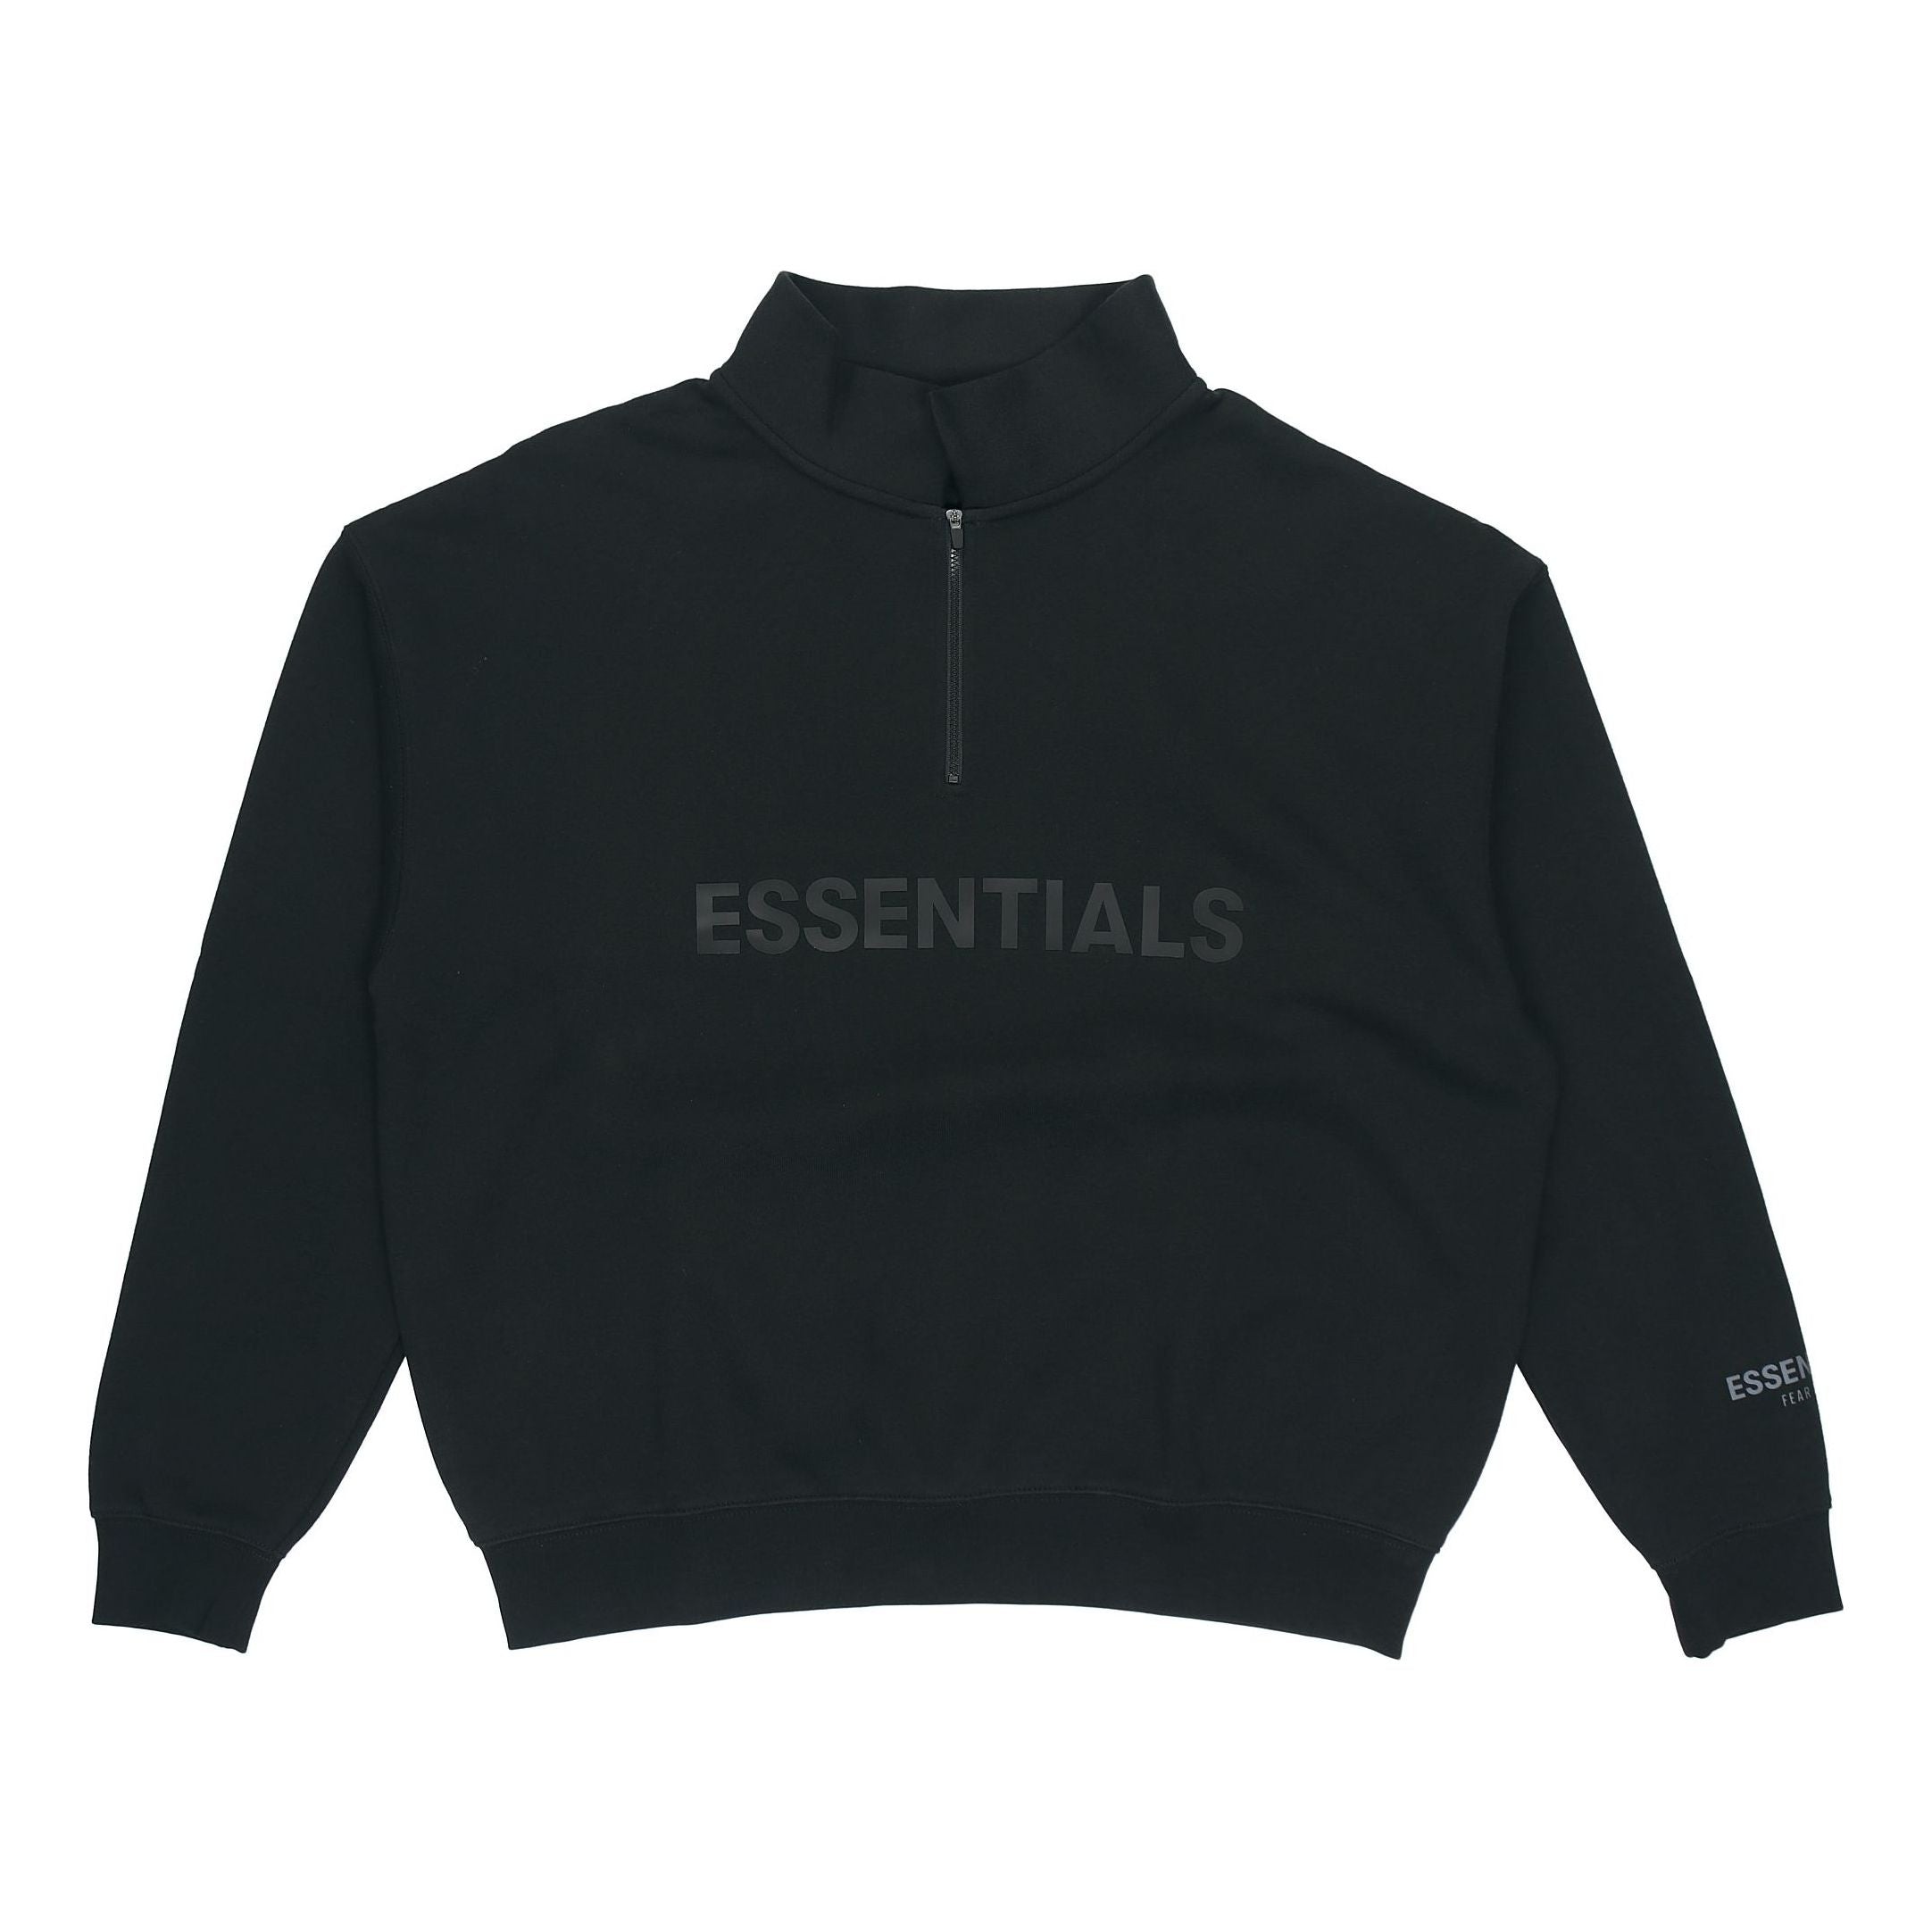 Fear of God Essentials FW20 Half Zip Sweatshirt 'Black' 0192250500211001